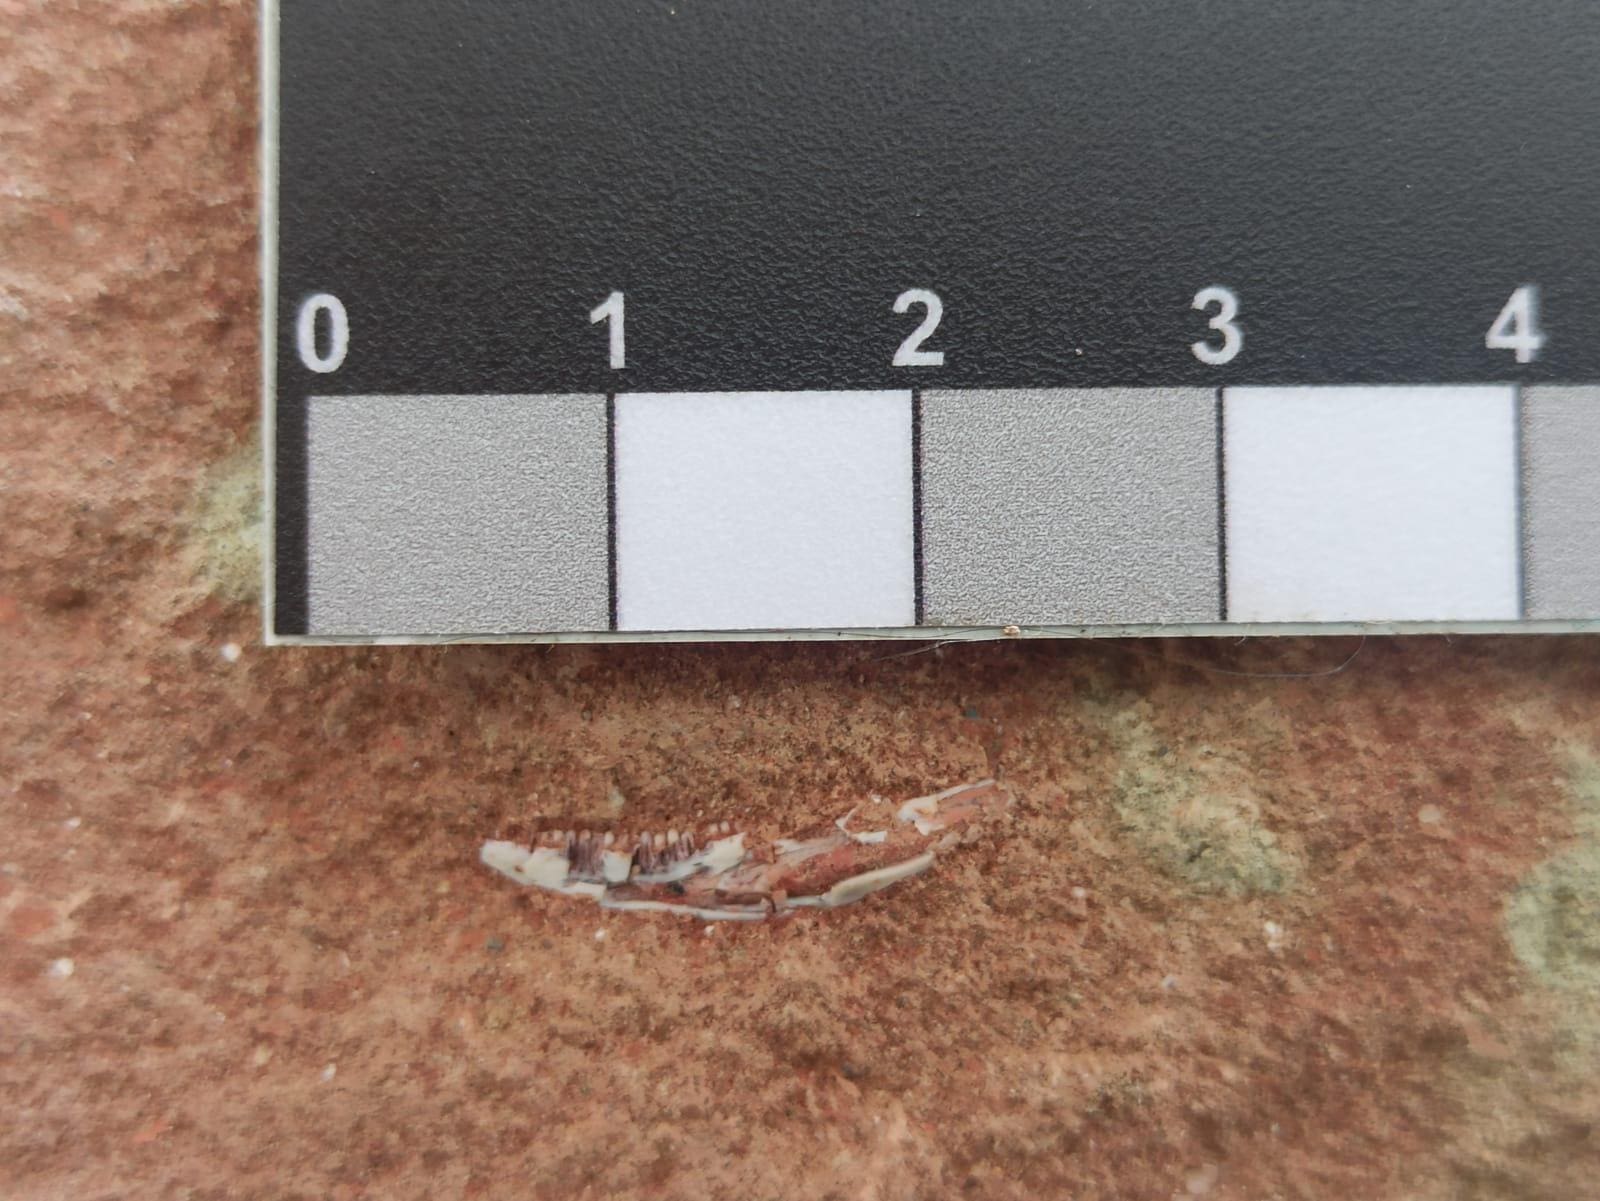 Mandíbula de lagarto encontrada em rocha de 80 milhões de anos em Uberaba